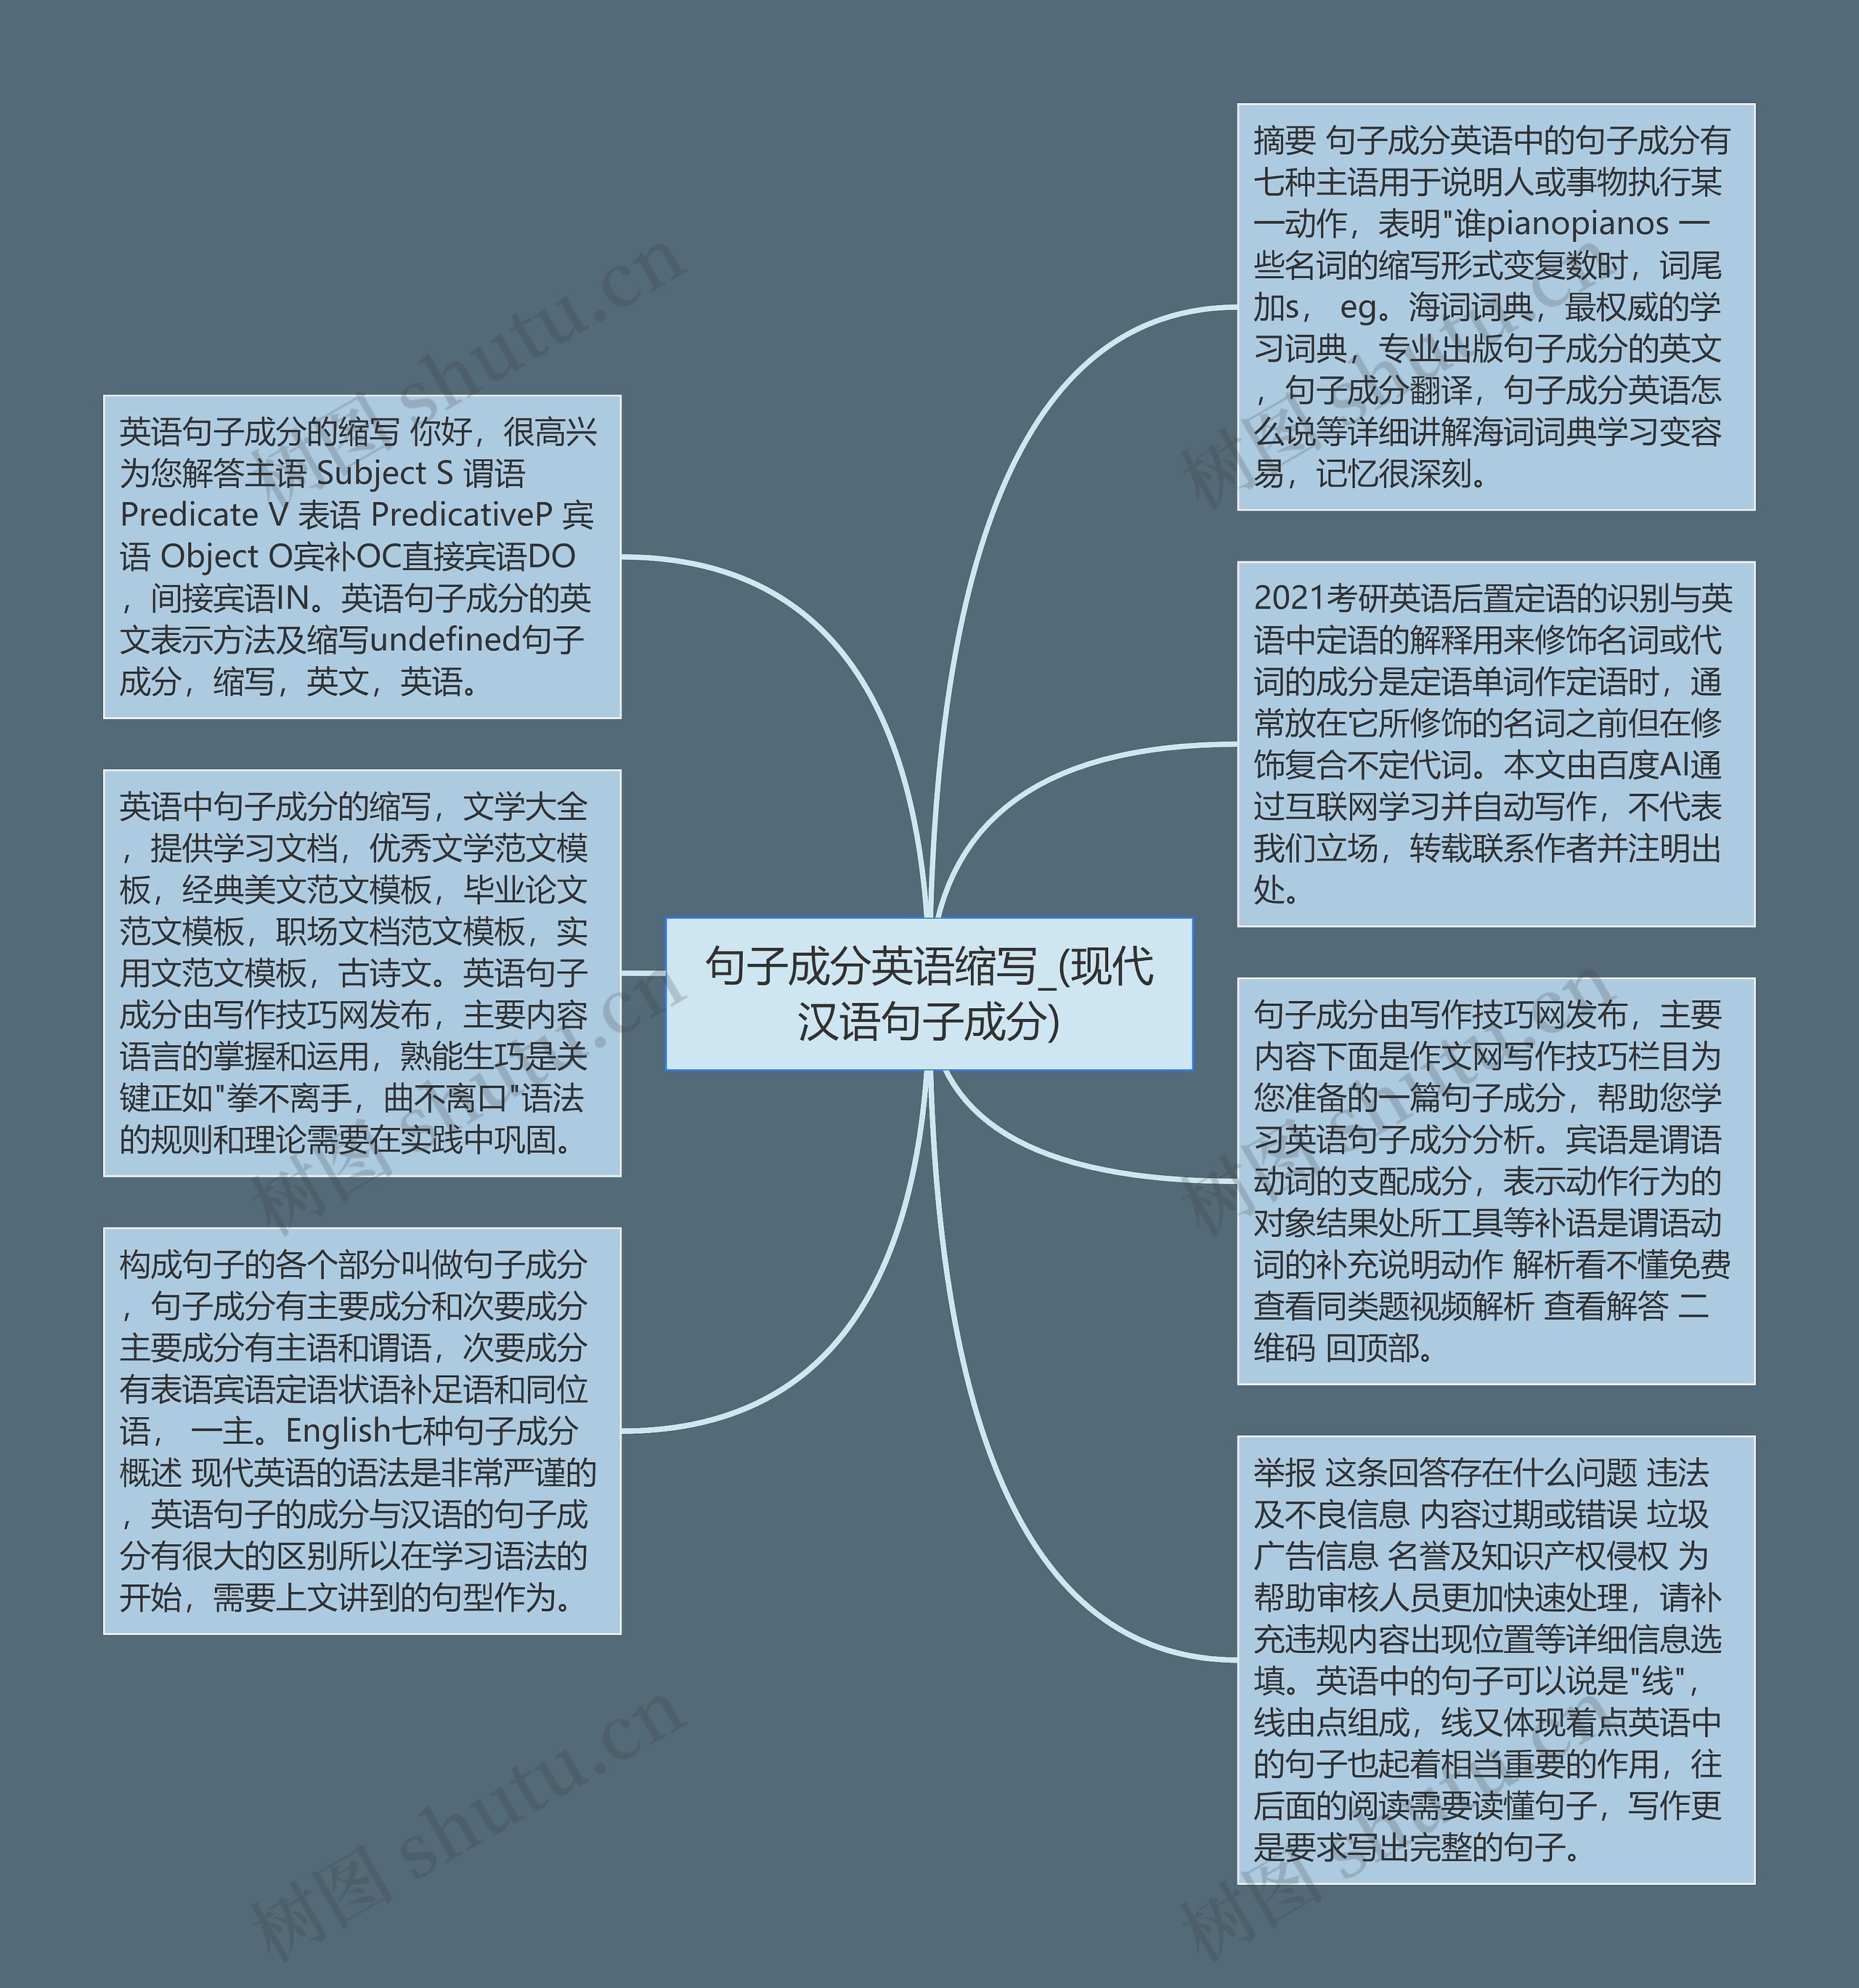 句子成分英语缩写_(现代汉语句子成分)思维导图